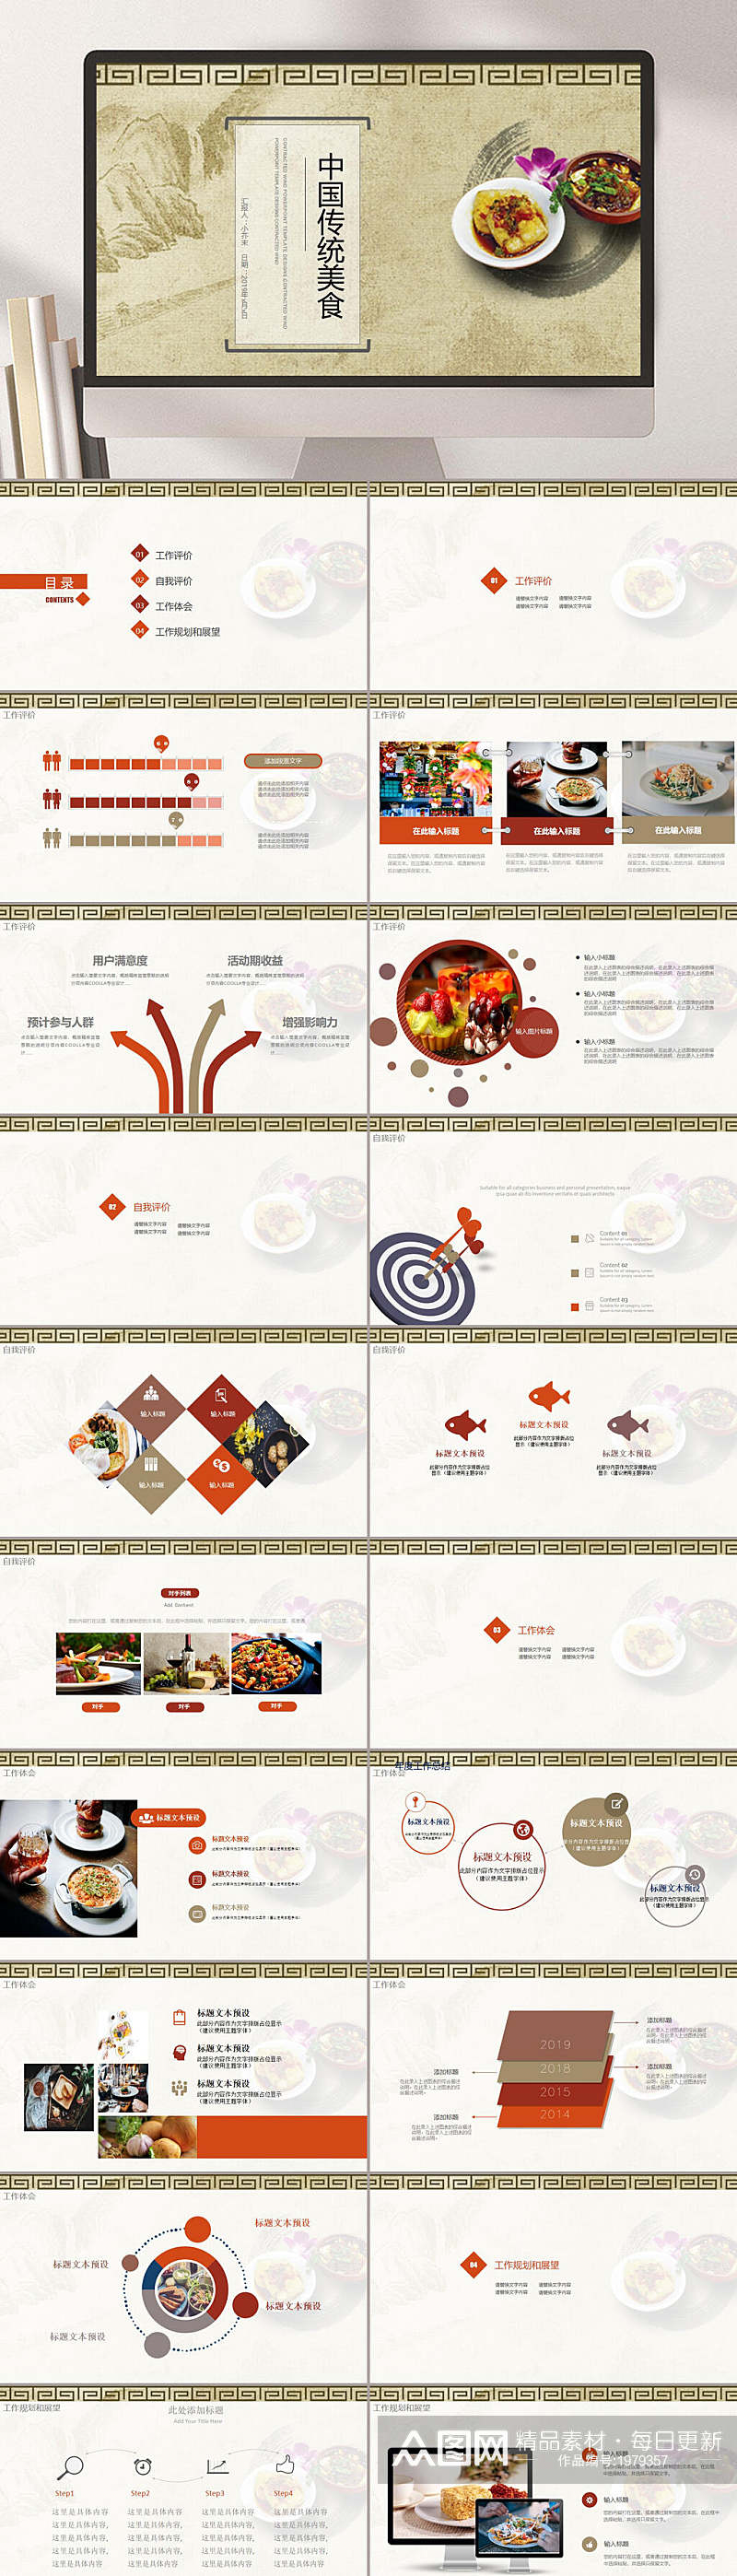 中国传统美食饮食店品牌宣传中餐PPT素材